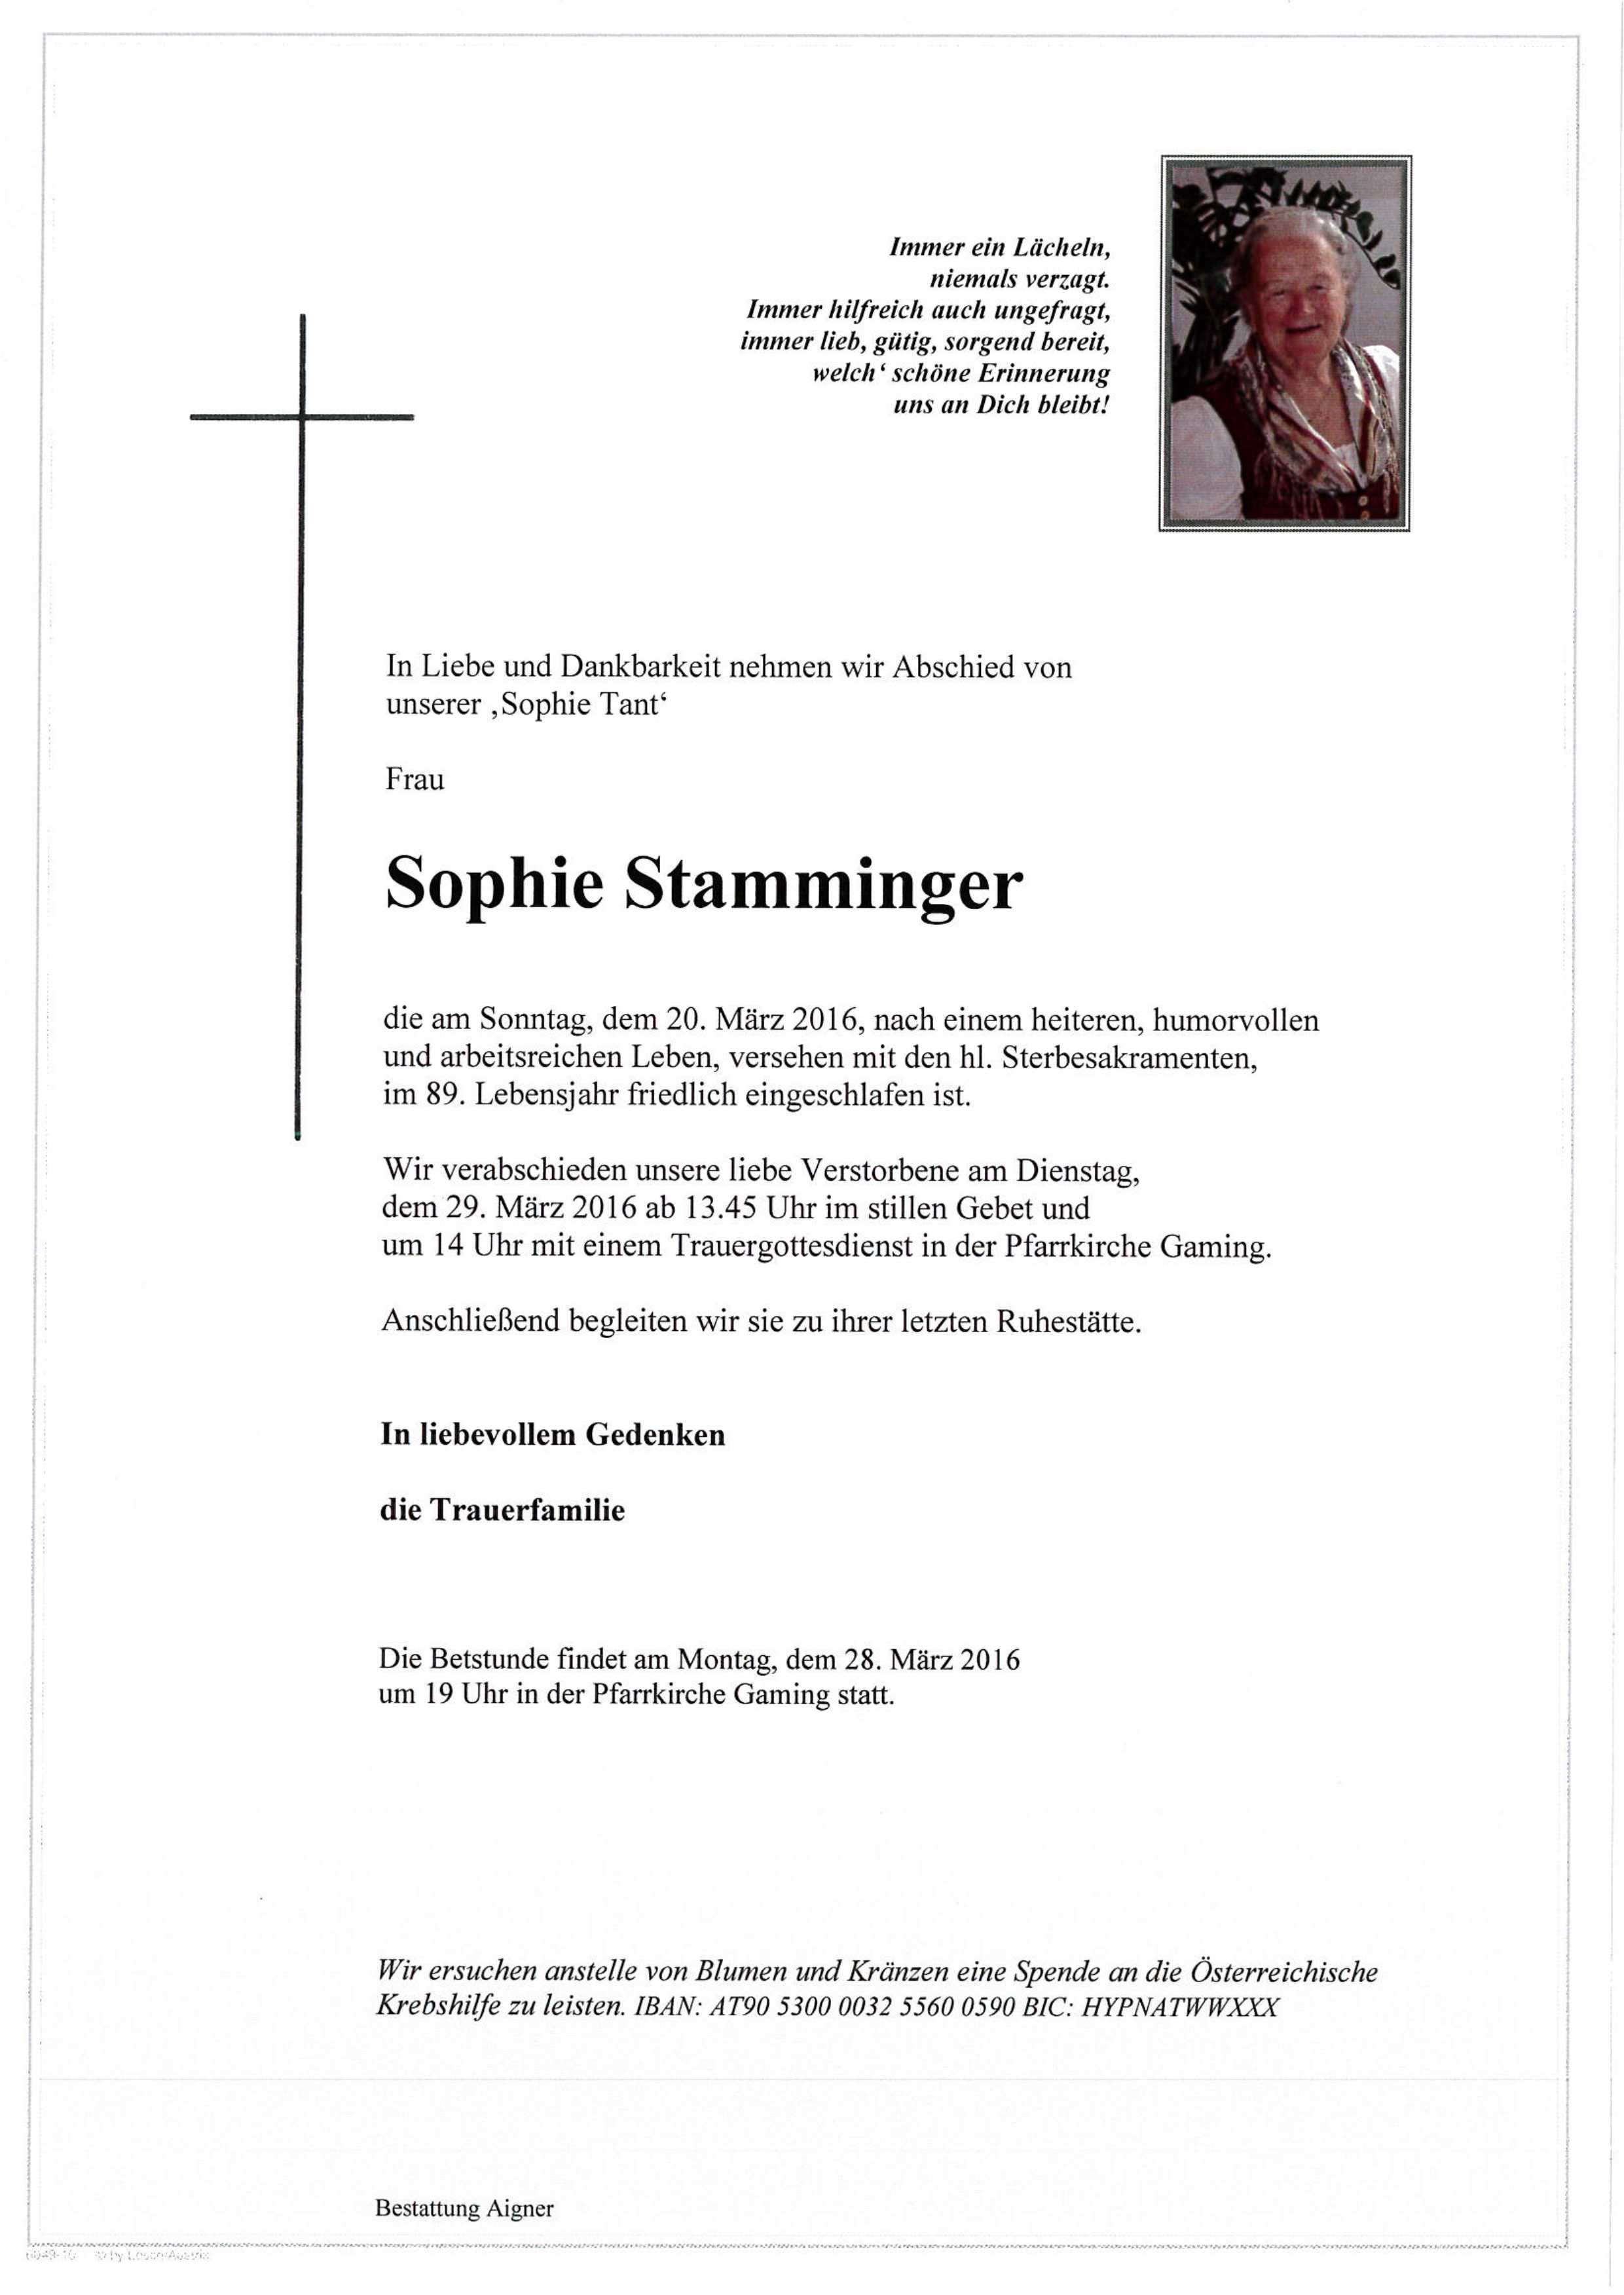 Sophie Stamminger